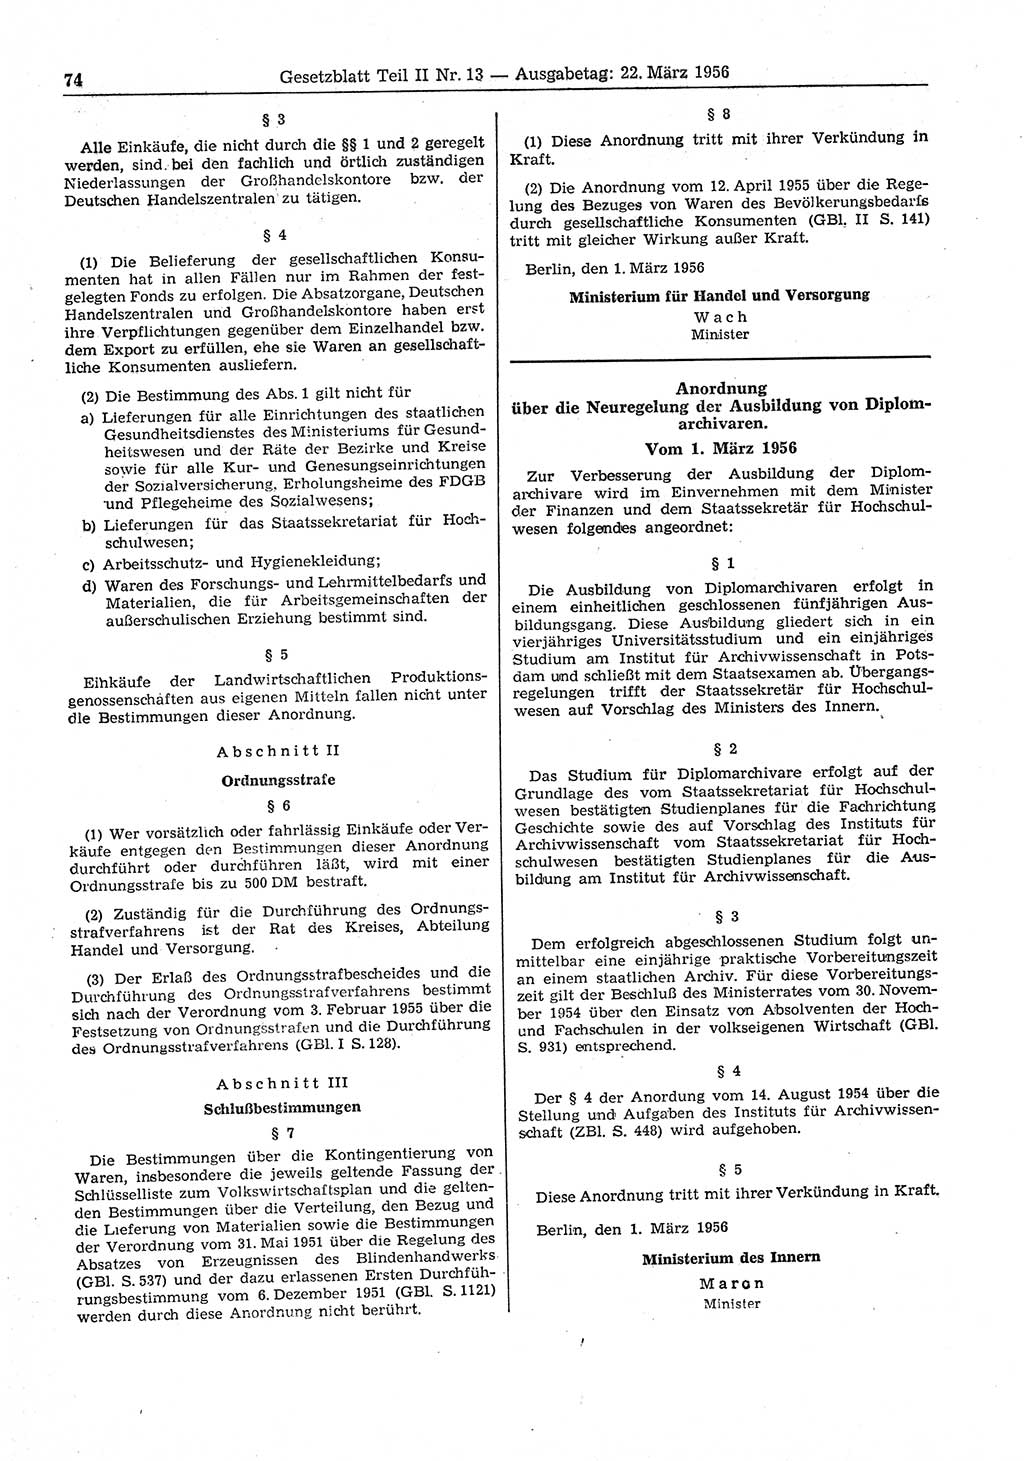 Gesetzblatt (GBl.) der Deutschen Demokratischen Republik (DDR) Teil ⅠⅠ 1956, Seite 74 (GBl. DDR ⅠⅠ 1956, S. 74)